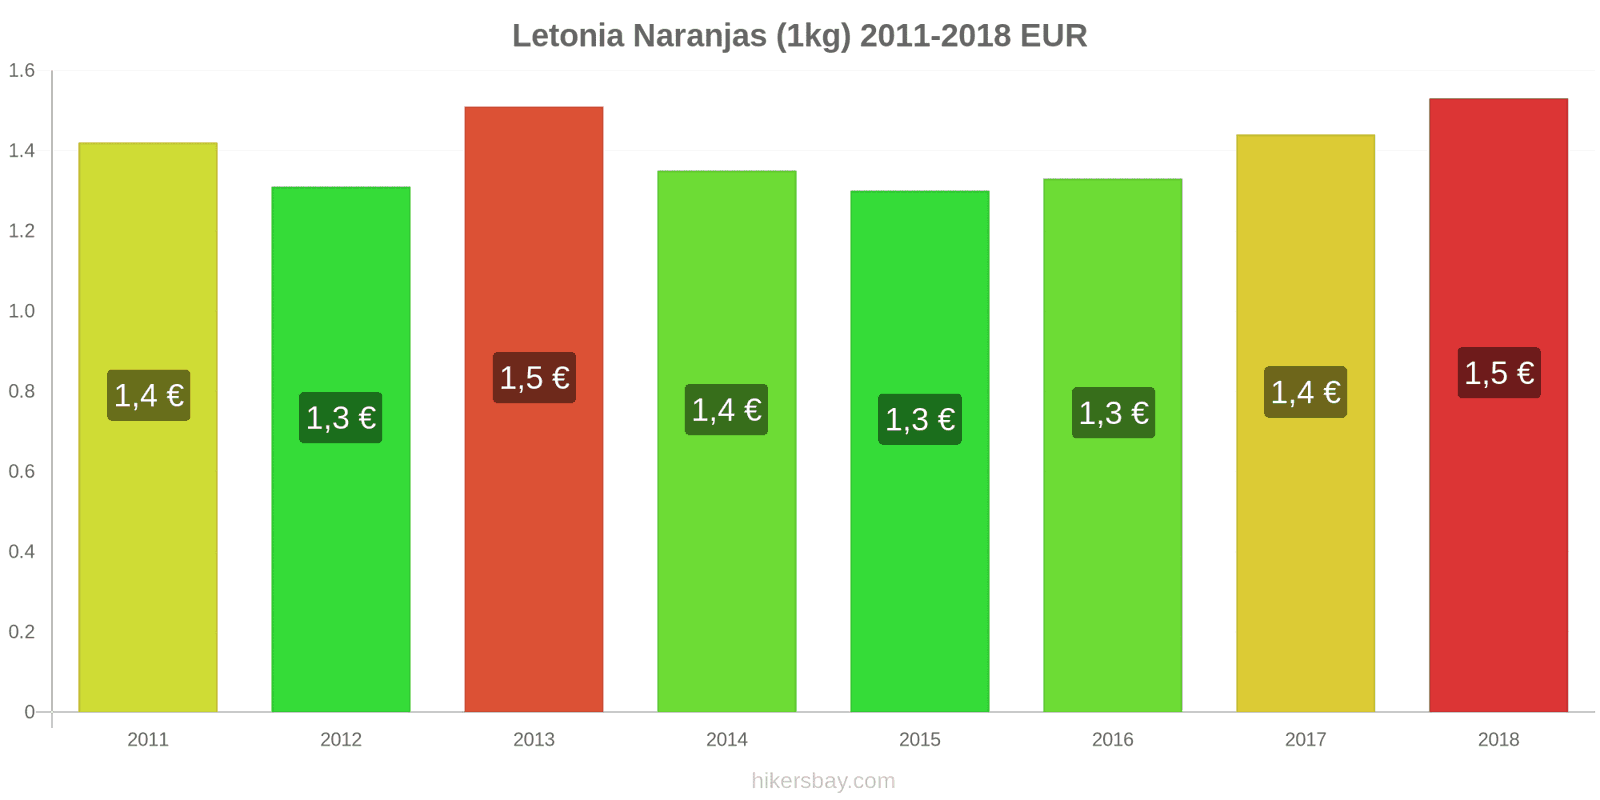 Letonia cambios de precios Naranjas (1kg) hikersbay.com